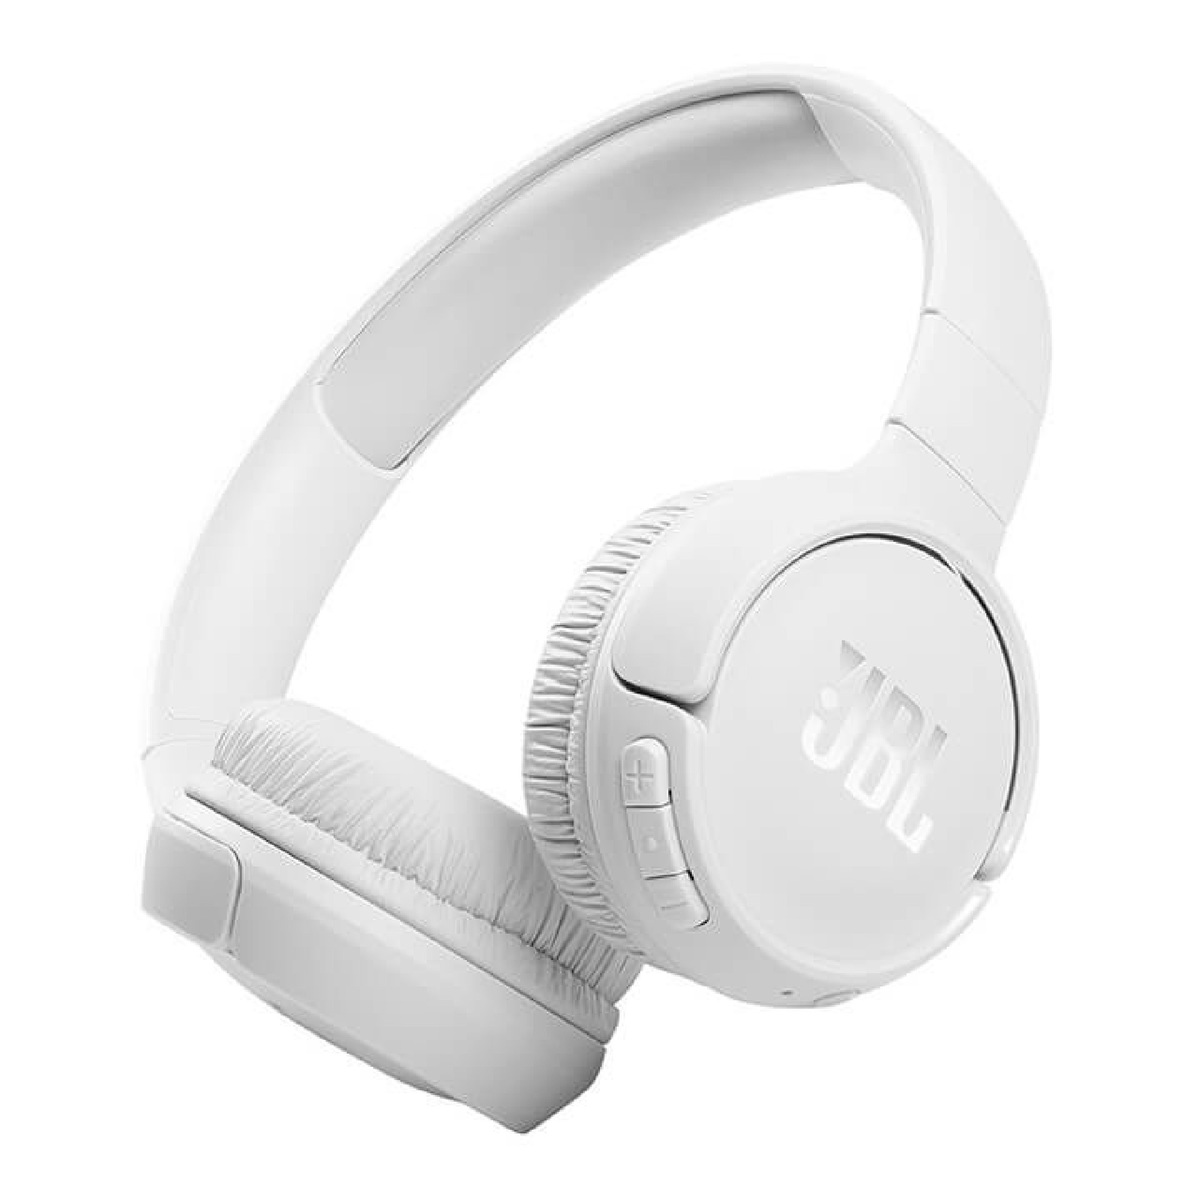 Buy Online JBL Tune 720BT Wireless On-Ear Headphones - Black in Qatar